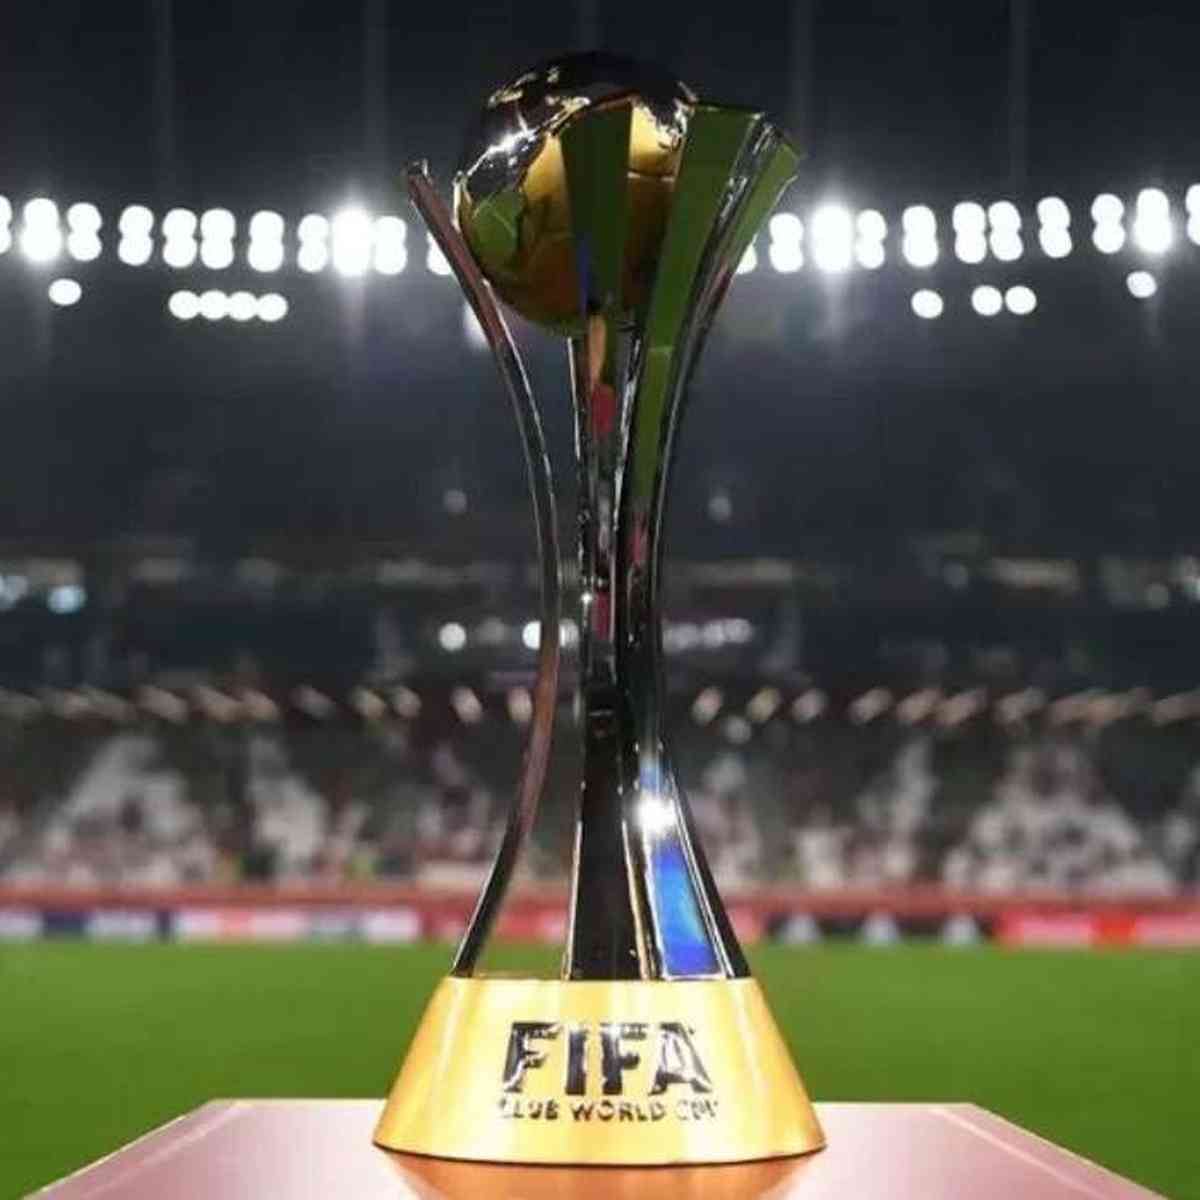 Fifa diz que Palmeiras é o 1º campeão mundial de clubes - Correio